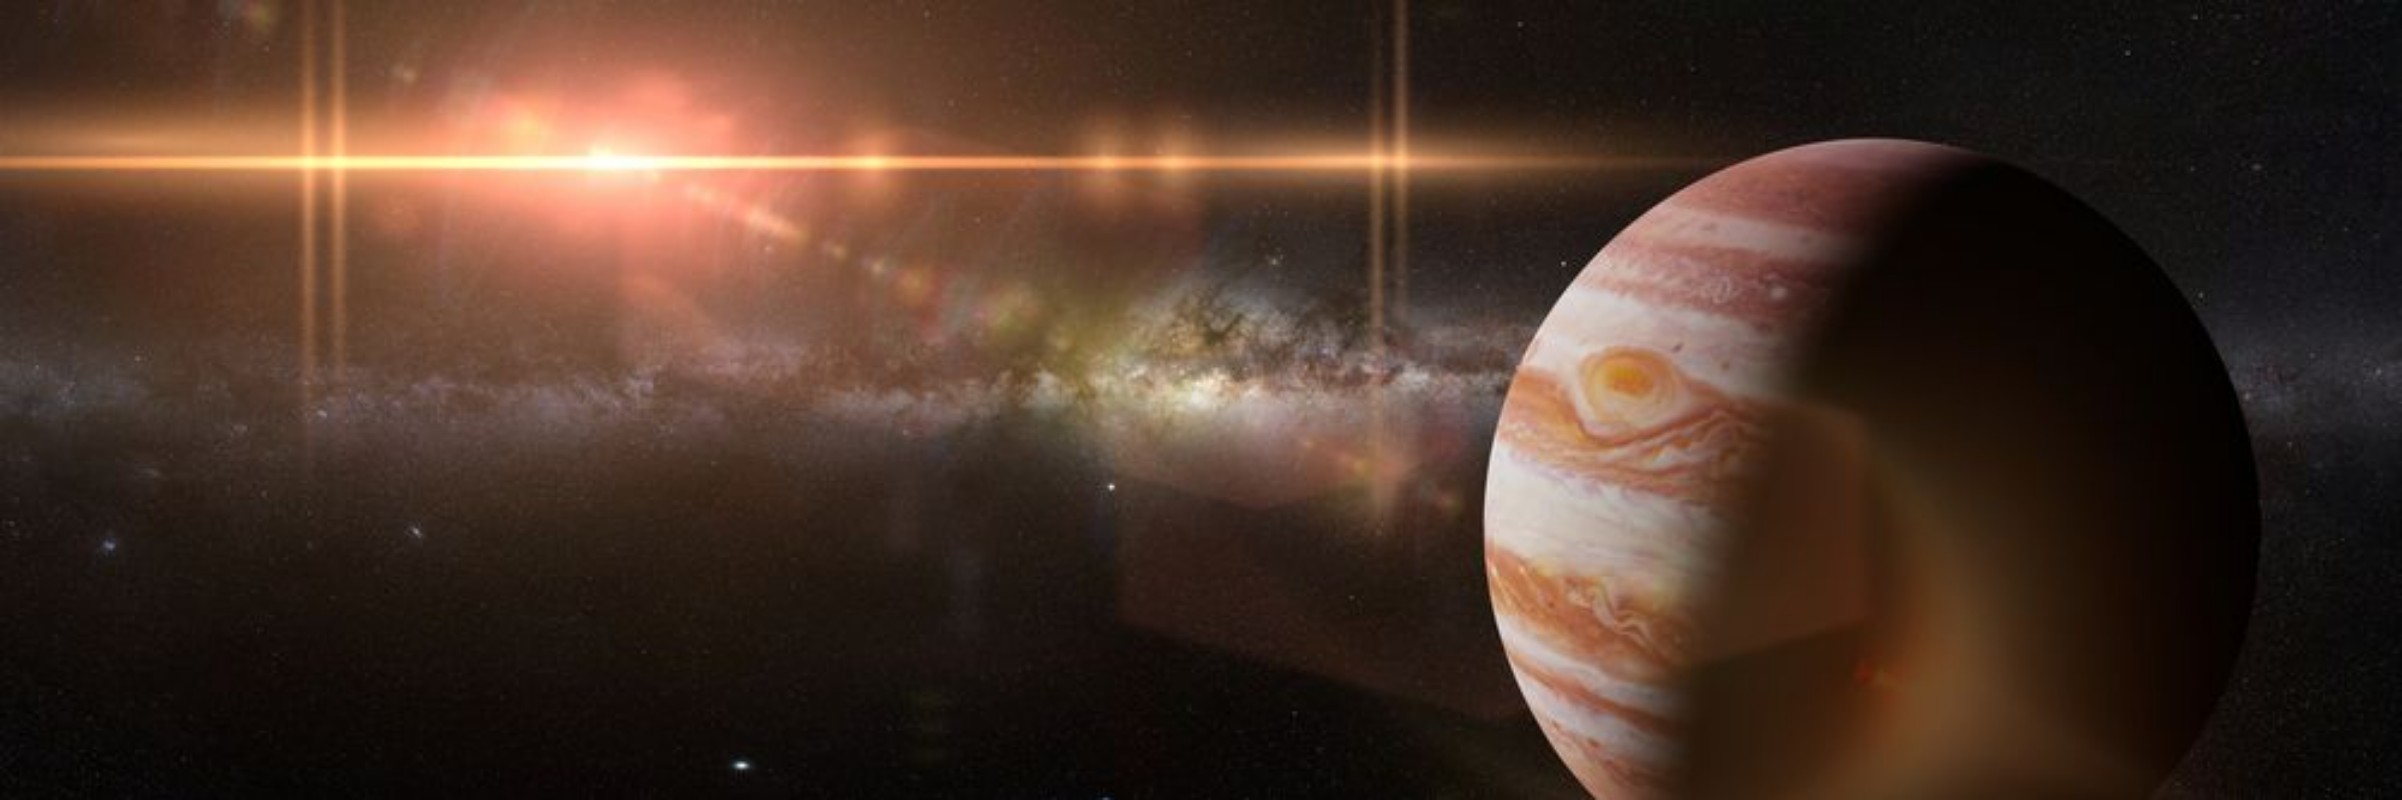 Image de Jupiter in The Milky Way